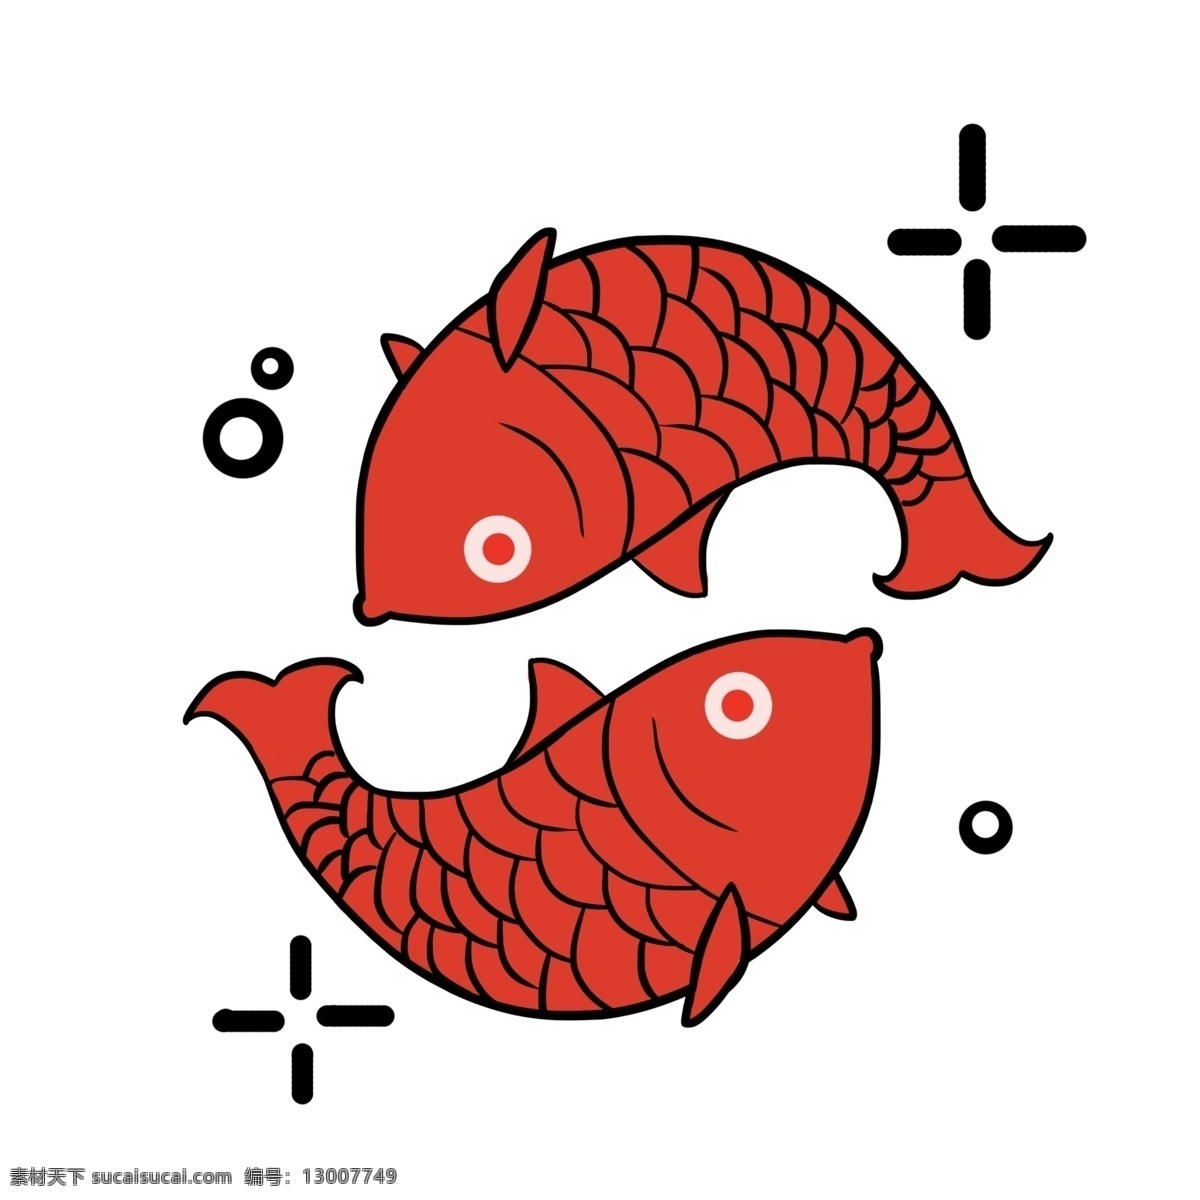 手绘 金鱼 戏水 插画 手绘金鱼 红色金鱼 卡通金鱼 插图 金鱼戏水 戏水插画 鱼 鱼儿插图